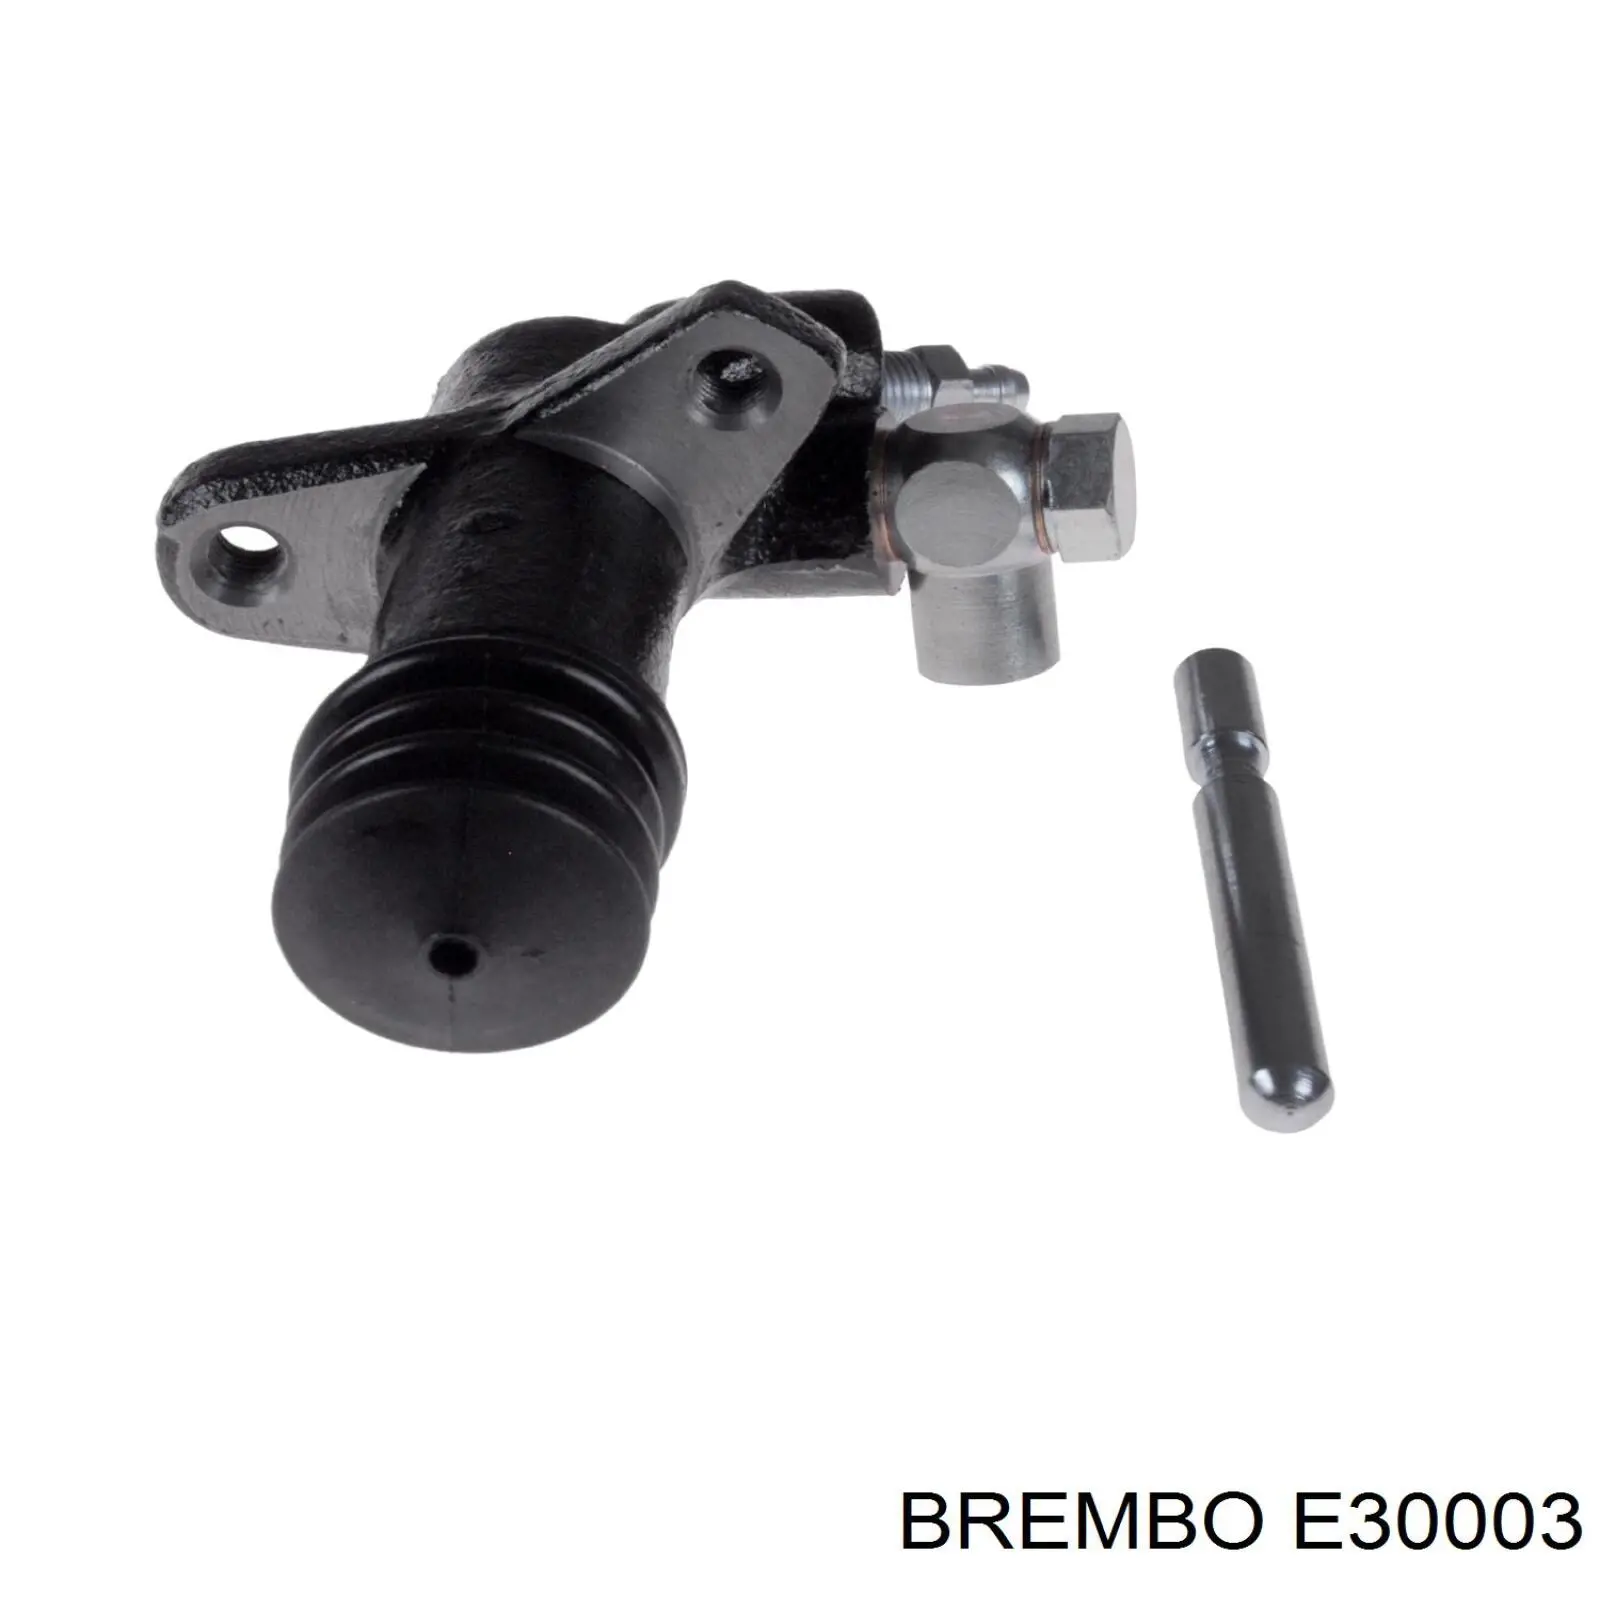 E30003 Brembo bombin de embrague